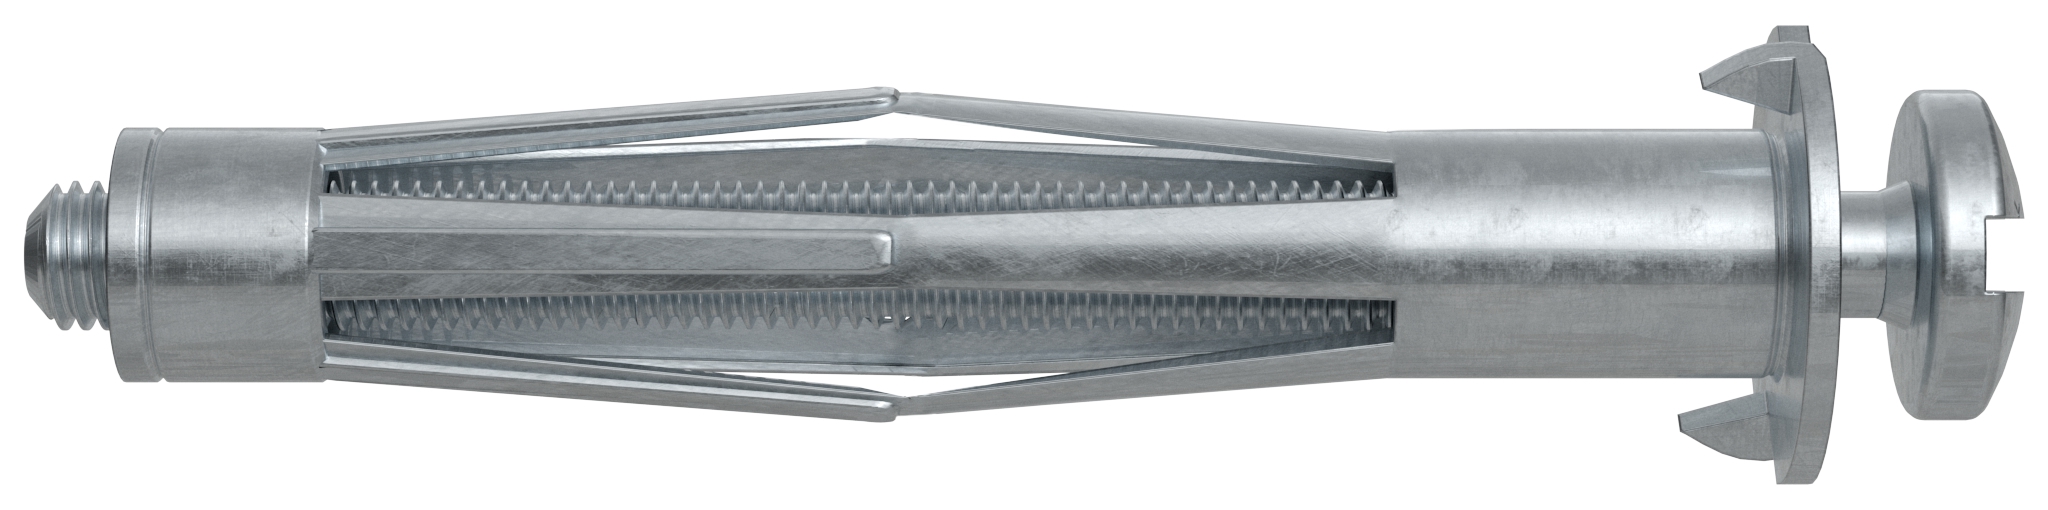 Fischer HM 5 x 52 S B. Der vielseitige Hohlraumdübel aus Metall mit metrischer Schraube.